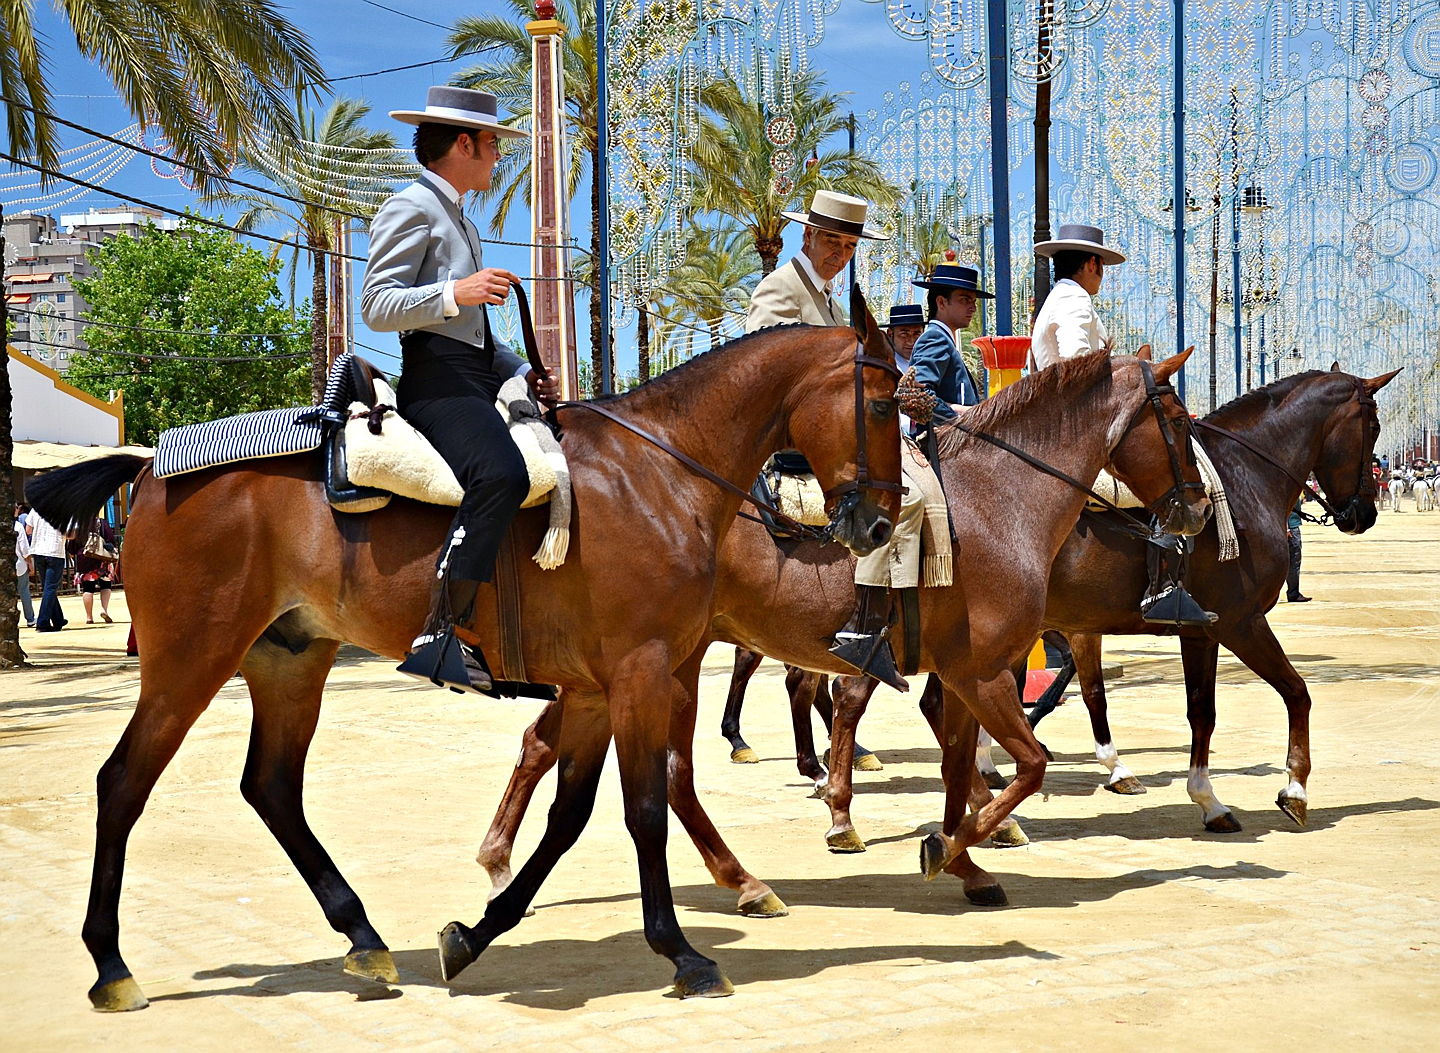  Sotogrande (San Roque)
- Horse Fair - Feria del Caballo